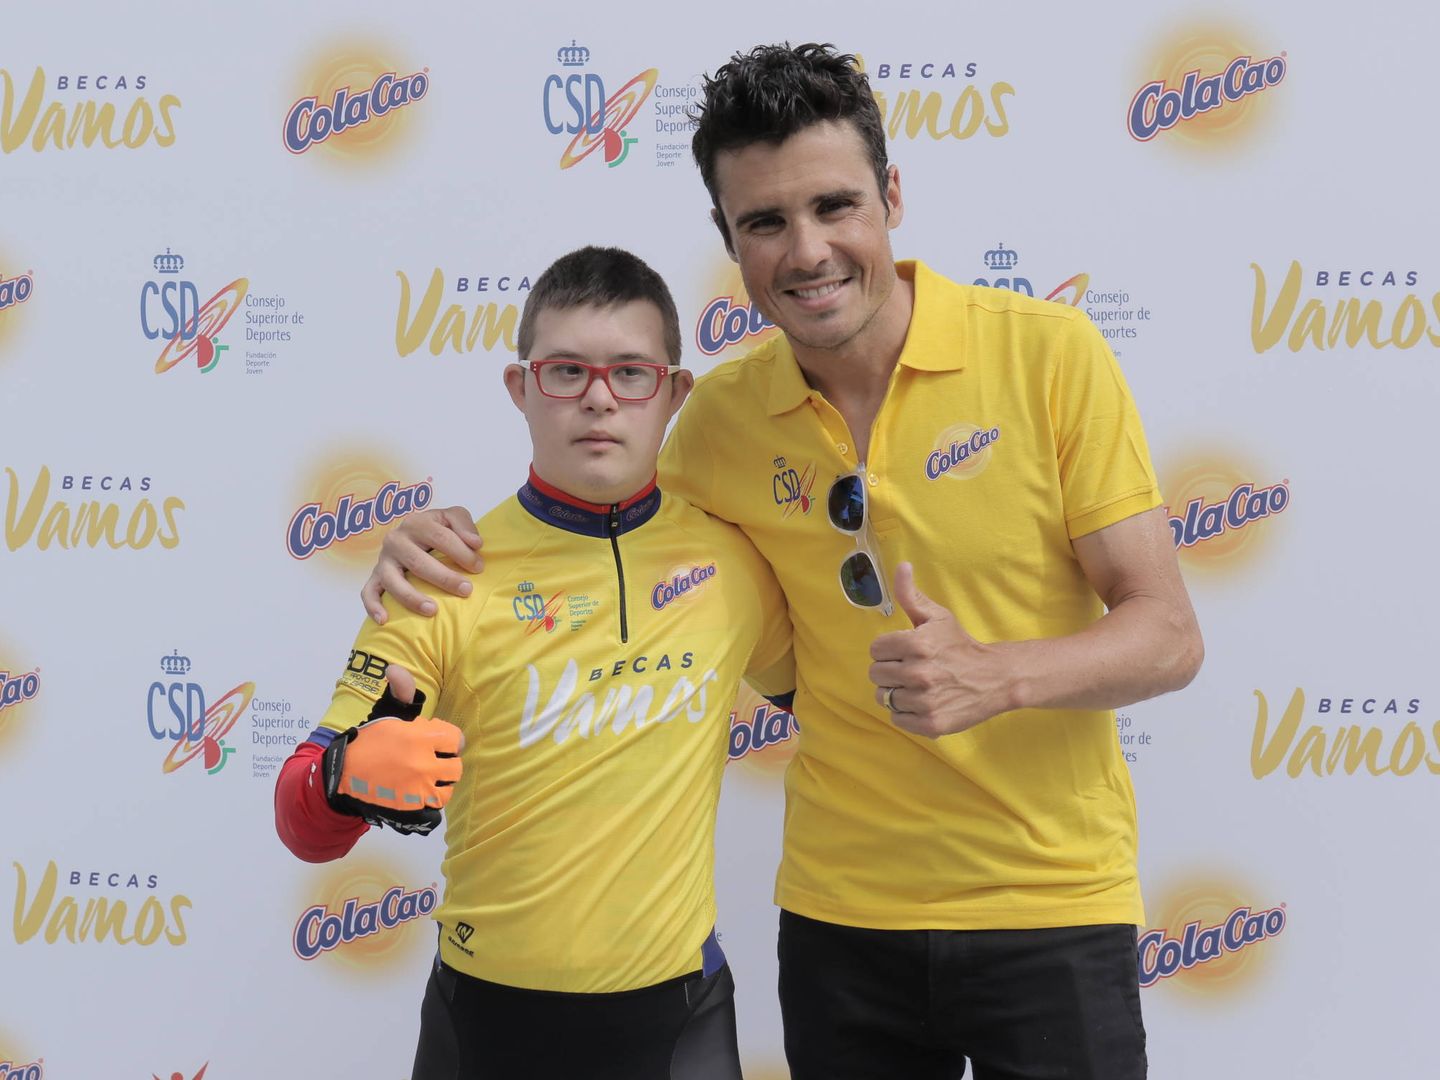 El joven ciclista Borja Gómez, junto al triatleta Javier Gómez Noya.